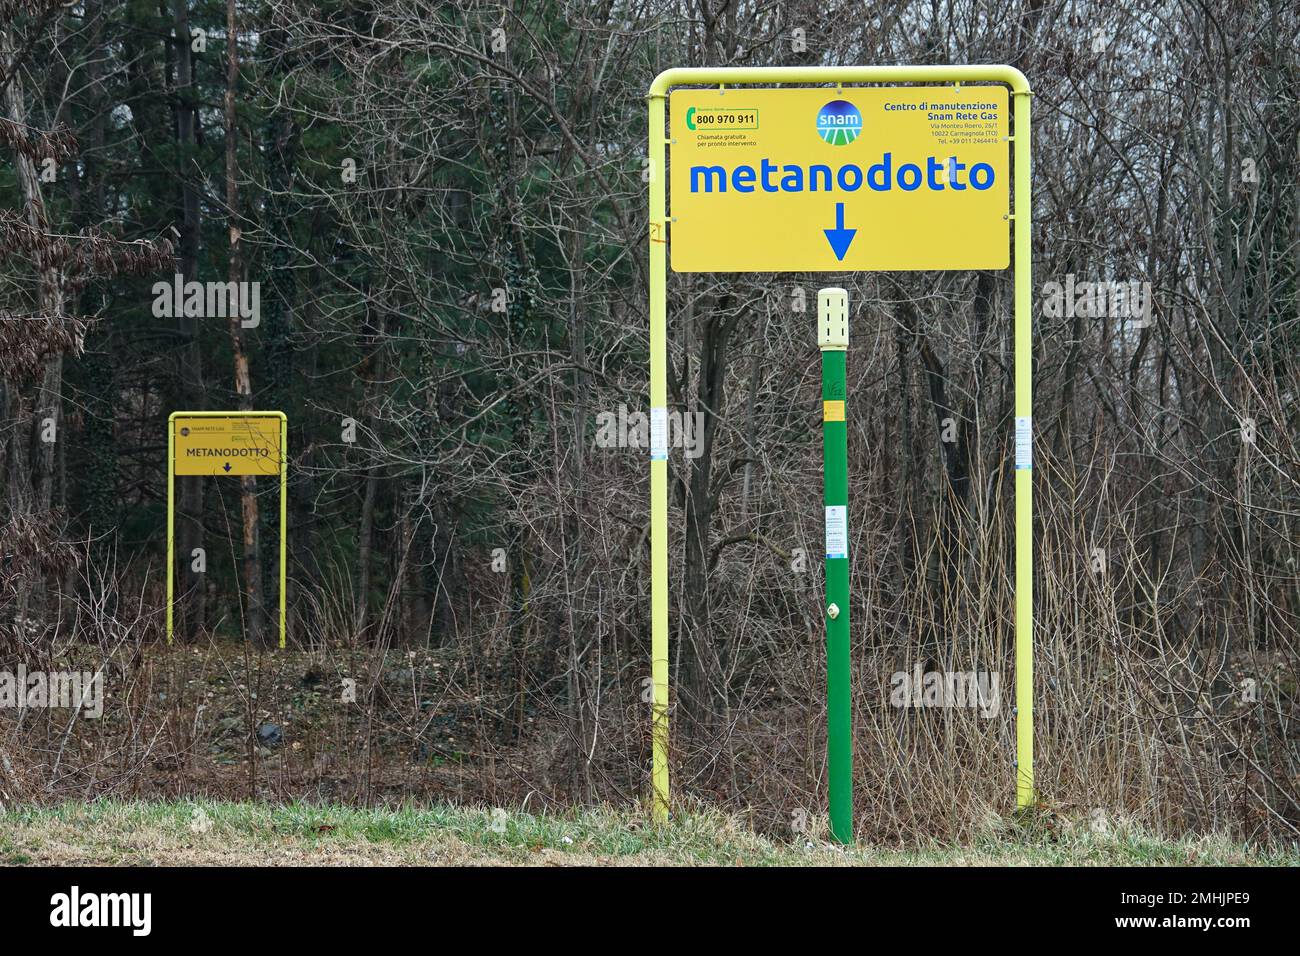 Beschilderung, die das Vorhandensein einer Methan-Pipeline-Verteilungsleitung anzeigt. Condove, Italien - Januar 2023 Stockfoto